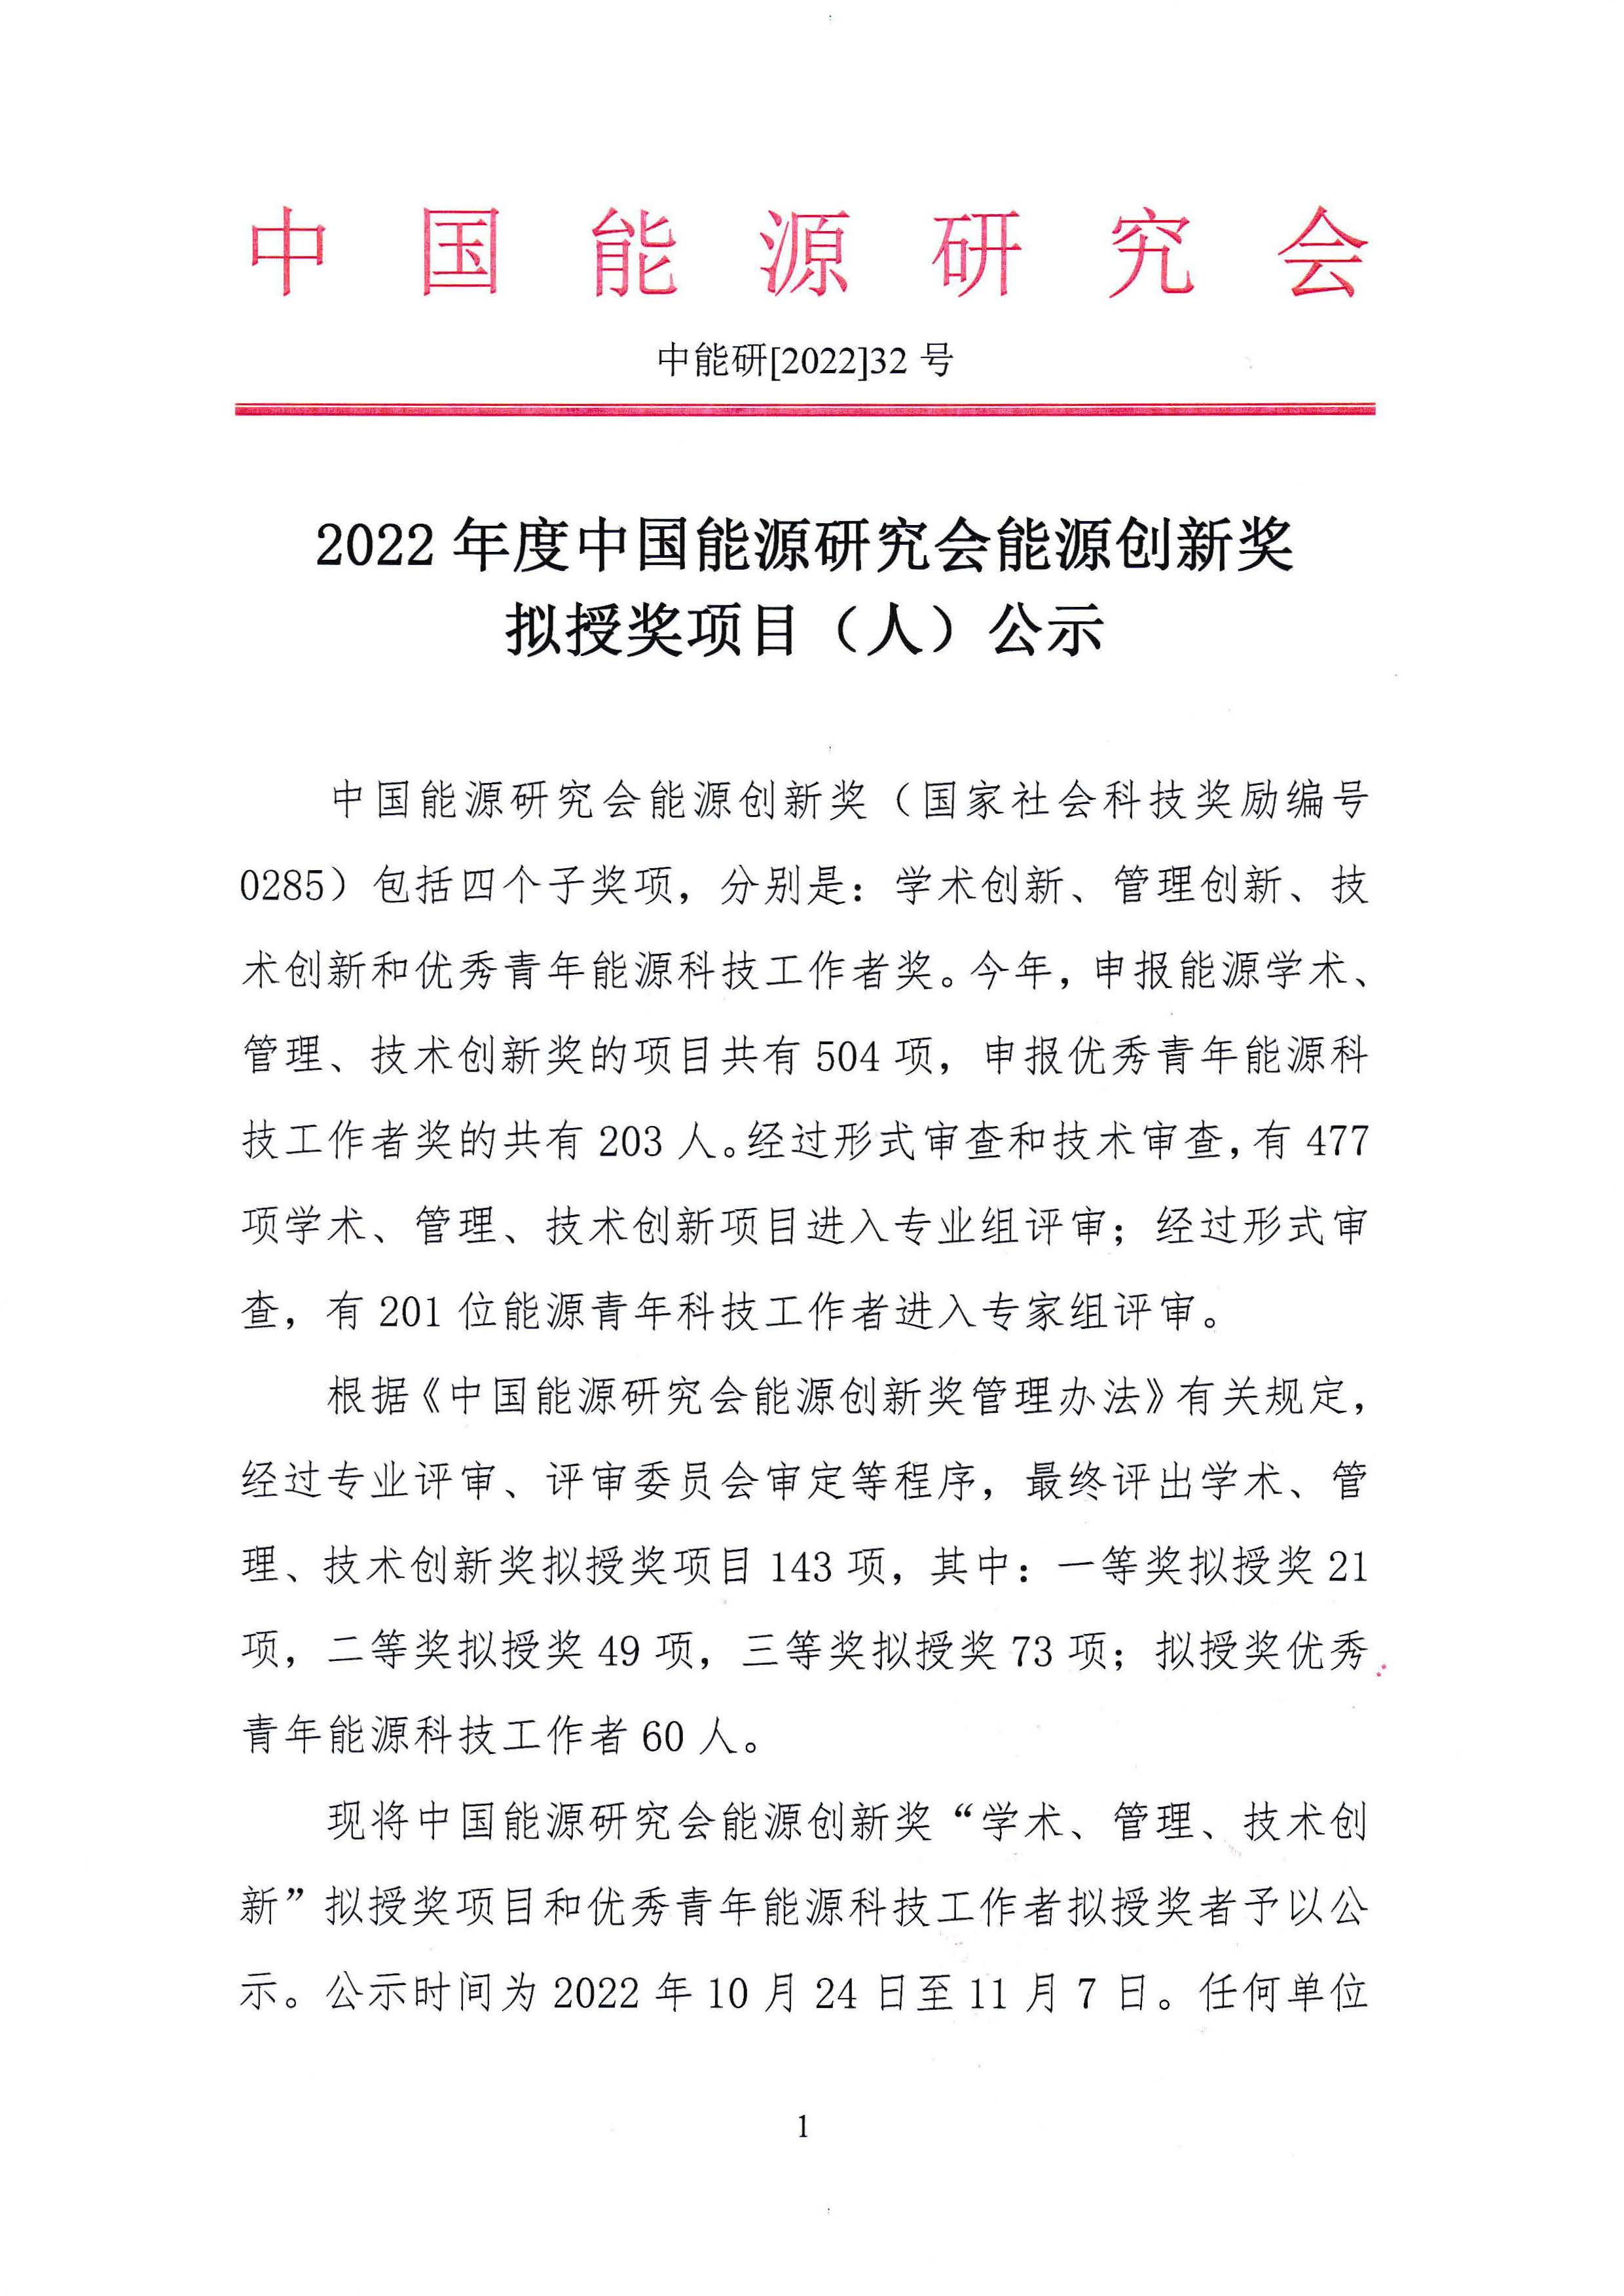 2022年度中国能源研究会能源创新奖公示 (1)_页面_1.jpg